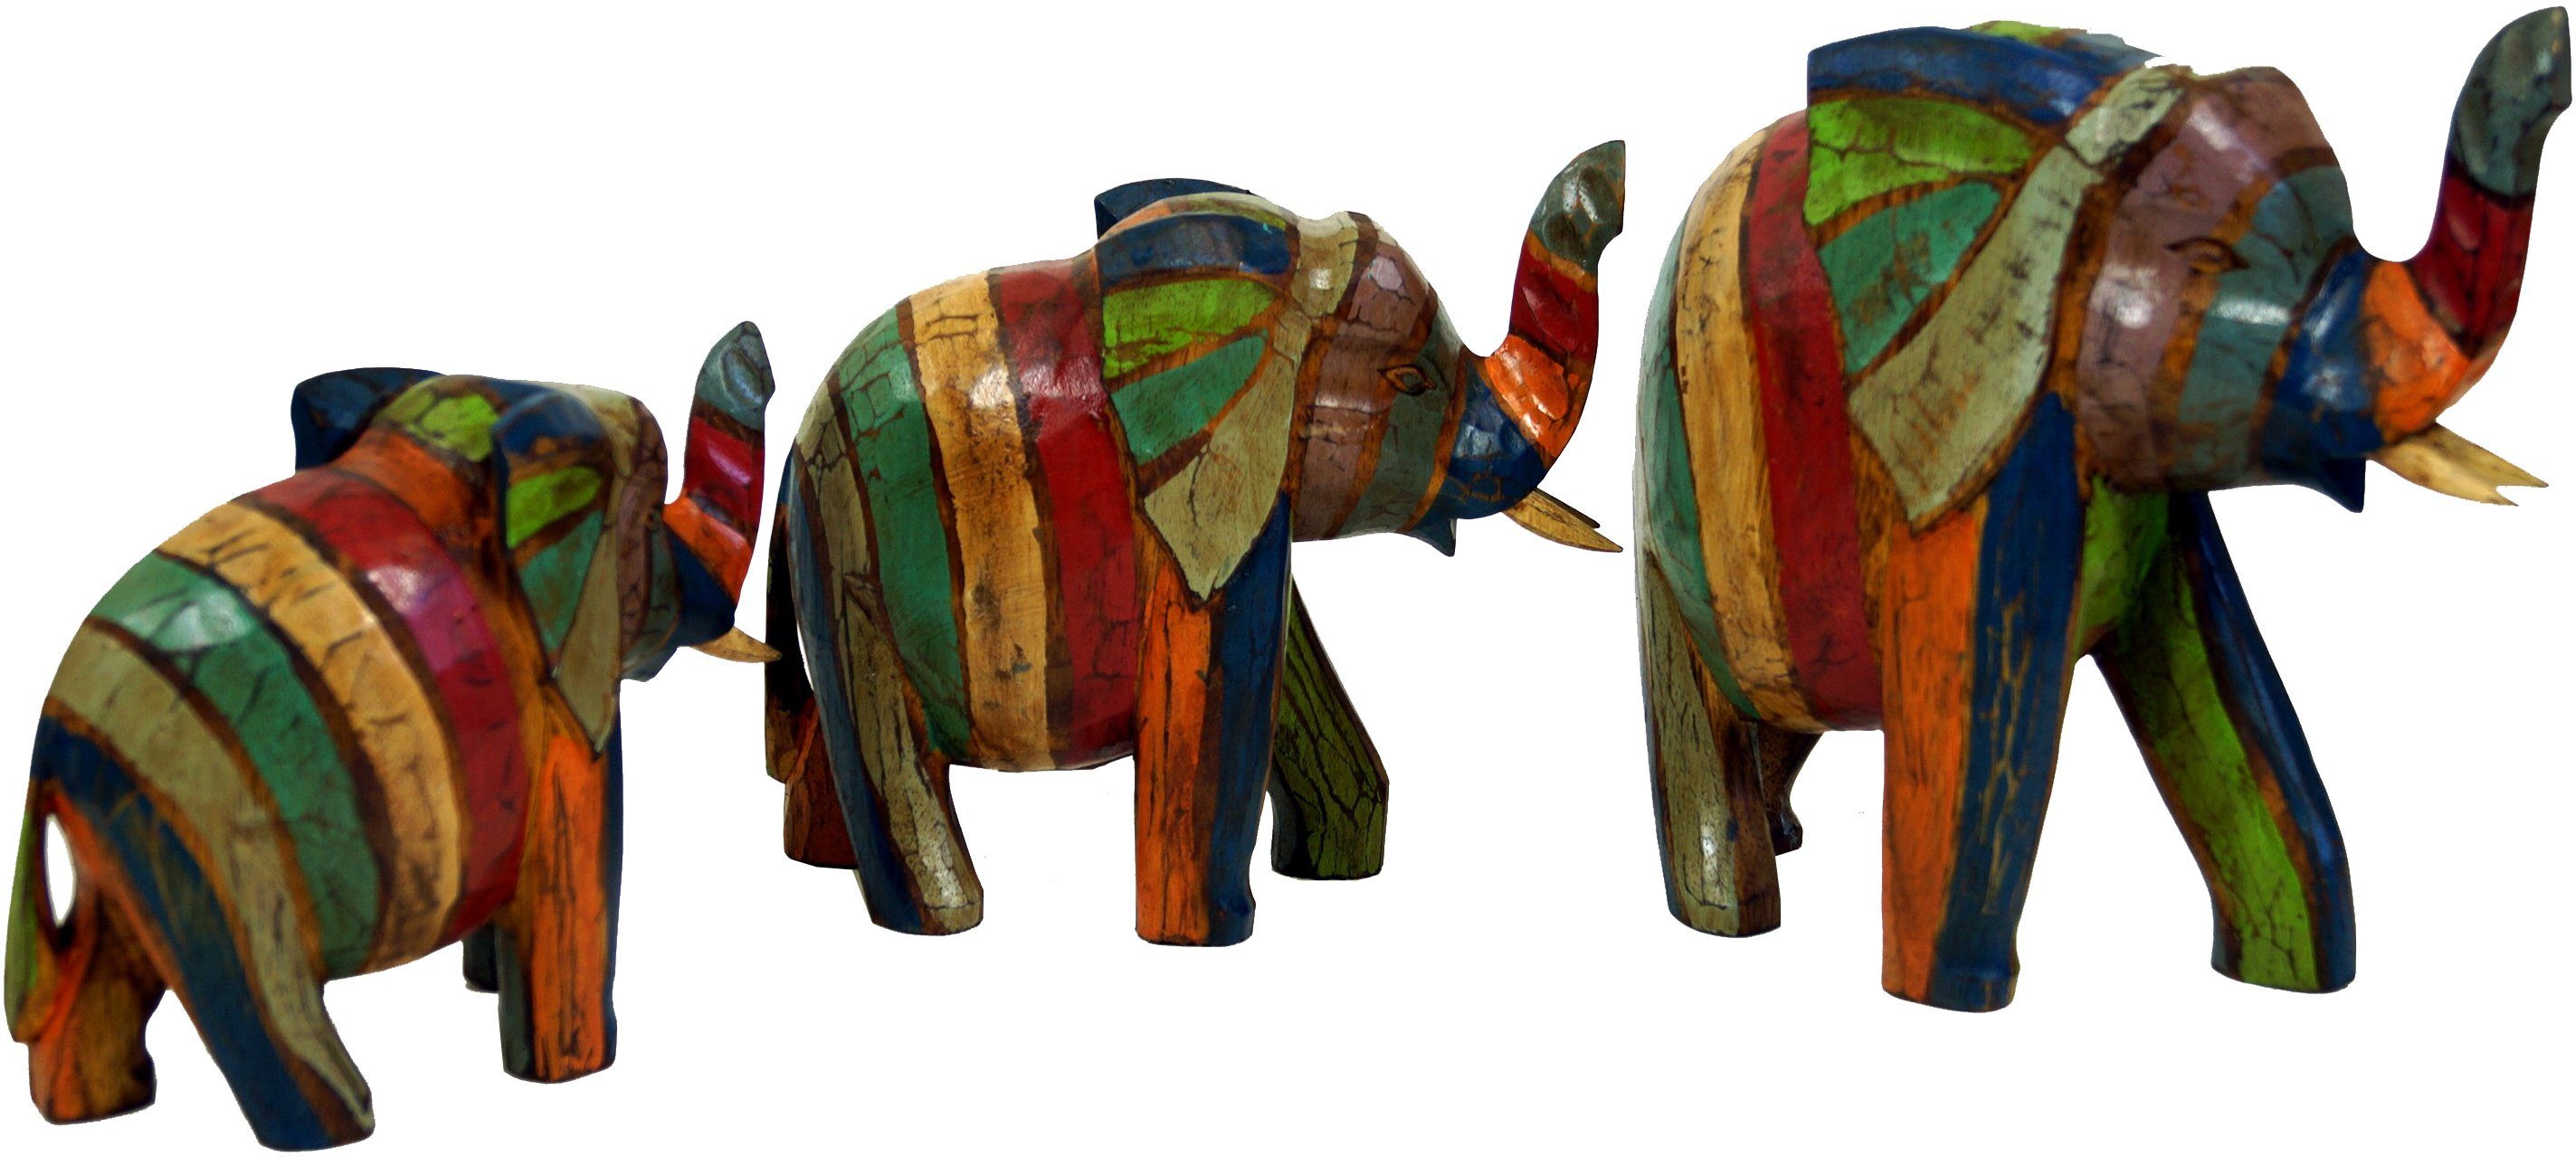 2er-Set aus Keramik Deko Dekoration Tierfigur Elefant Elefanten-Set "Matabi" 